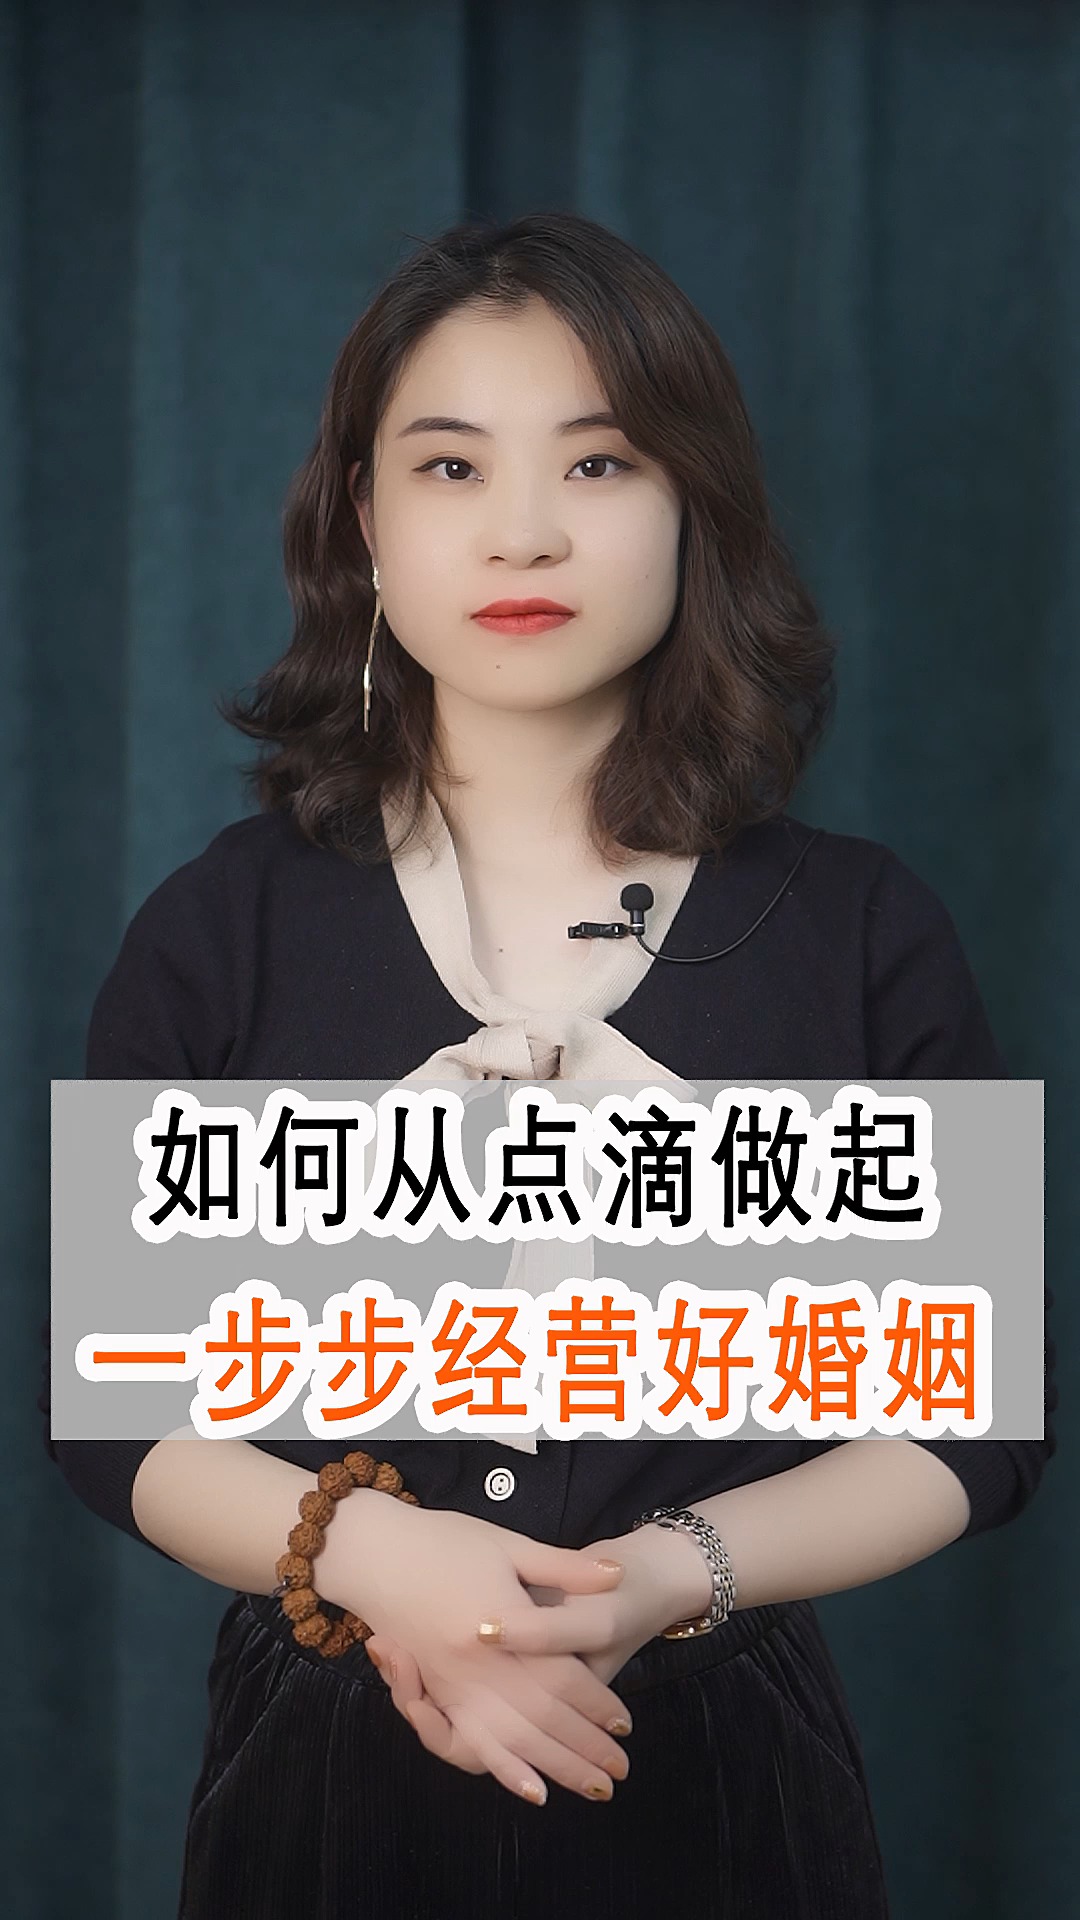 江苏家庭婚姻情感经营课程(2020江苏婚姻家庭典型案例)